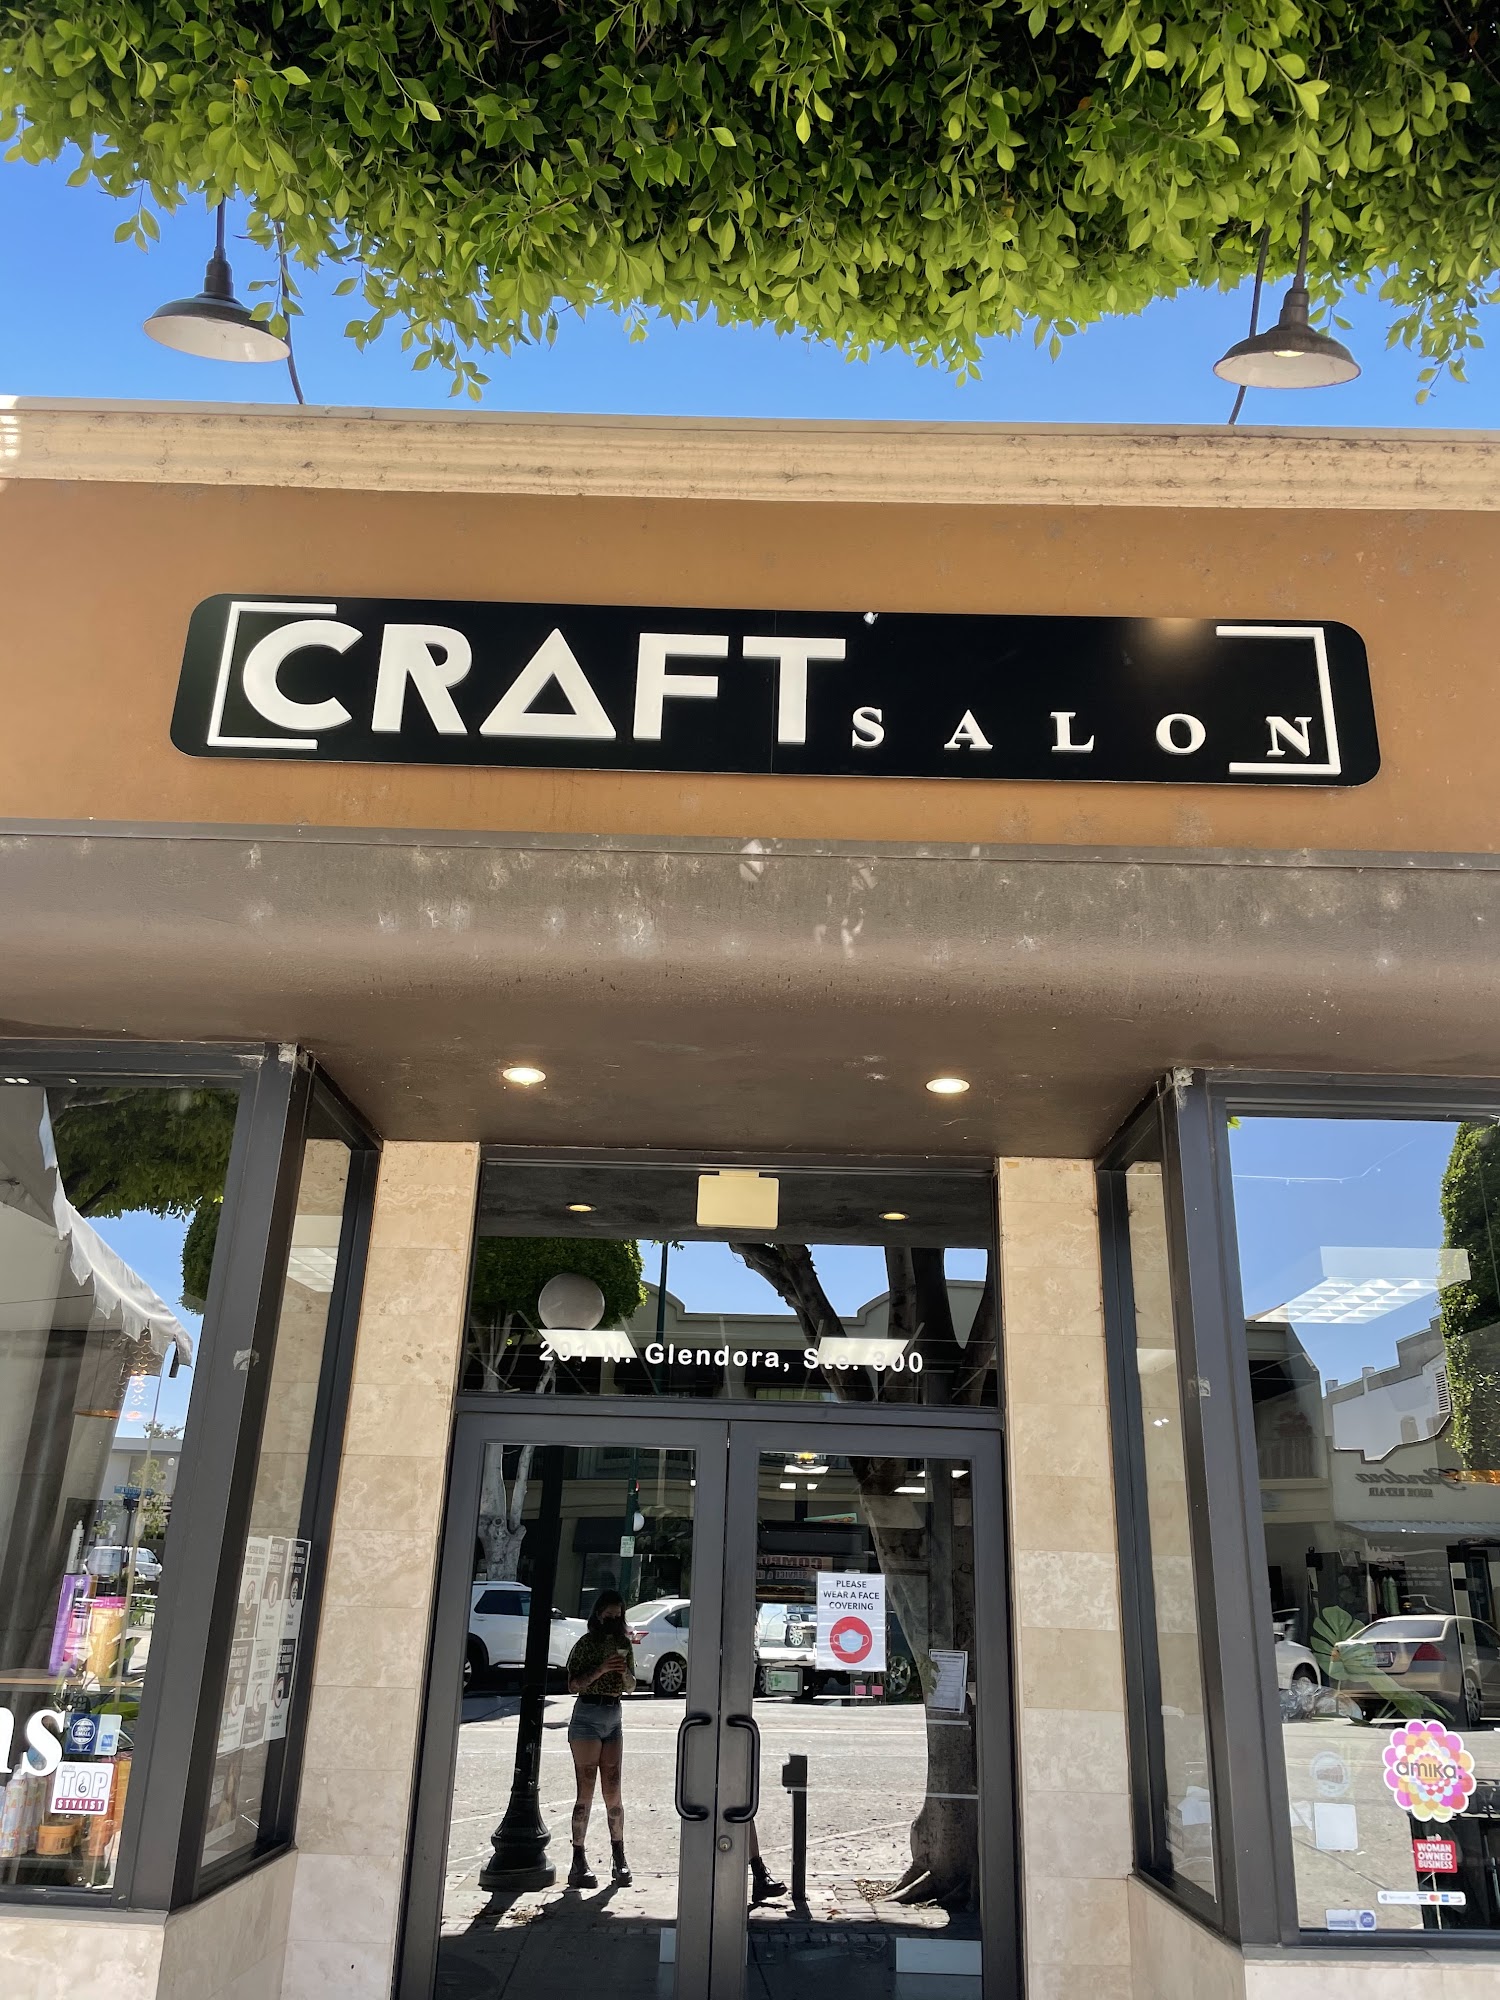 The CRAFT Salon